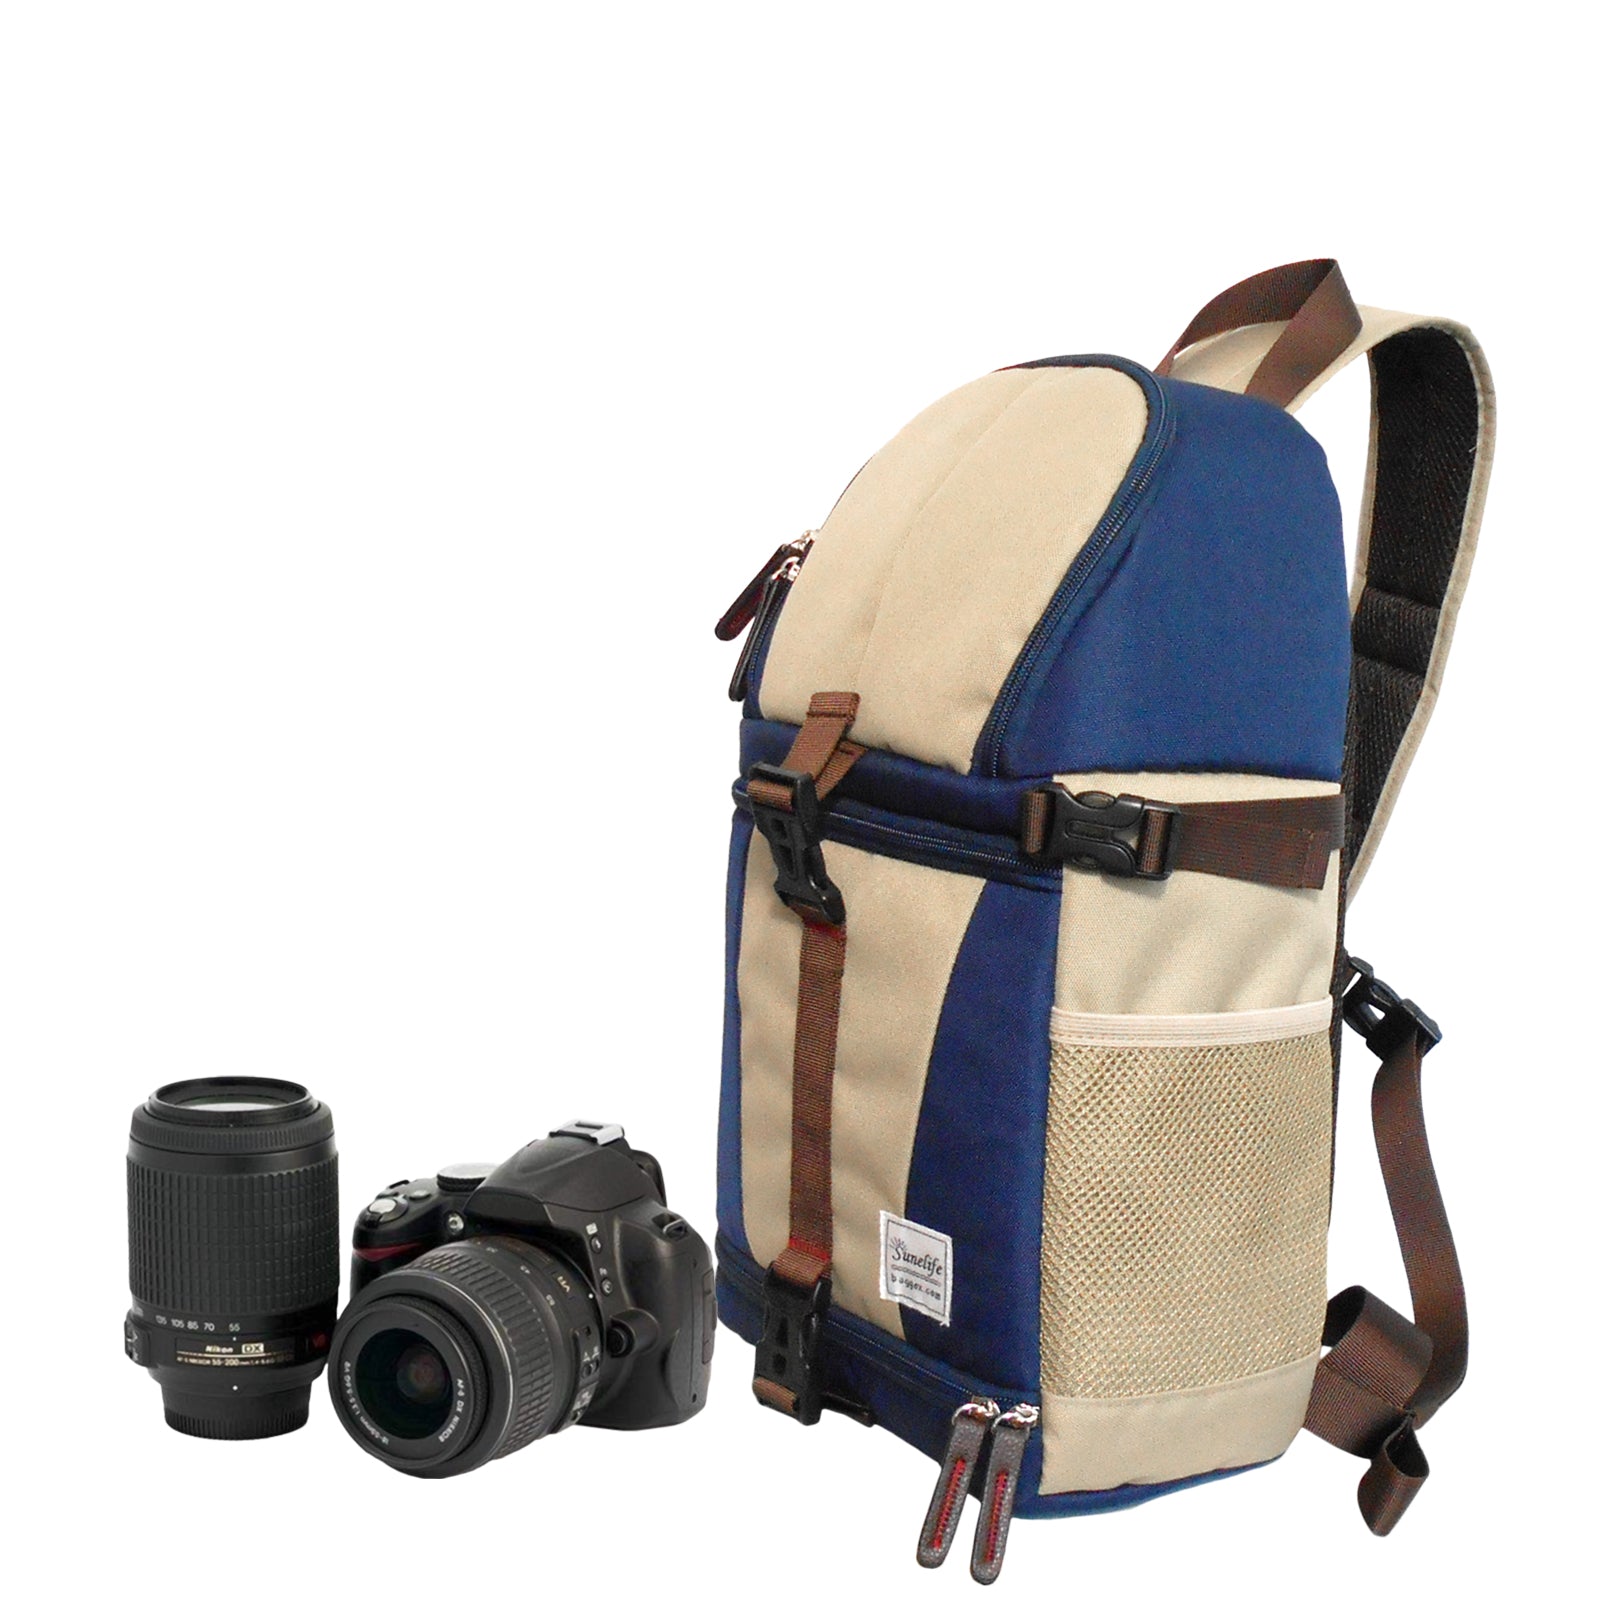 Stylish and Comfy Camera Bags for Wedding Photographers | Photobug Community